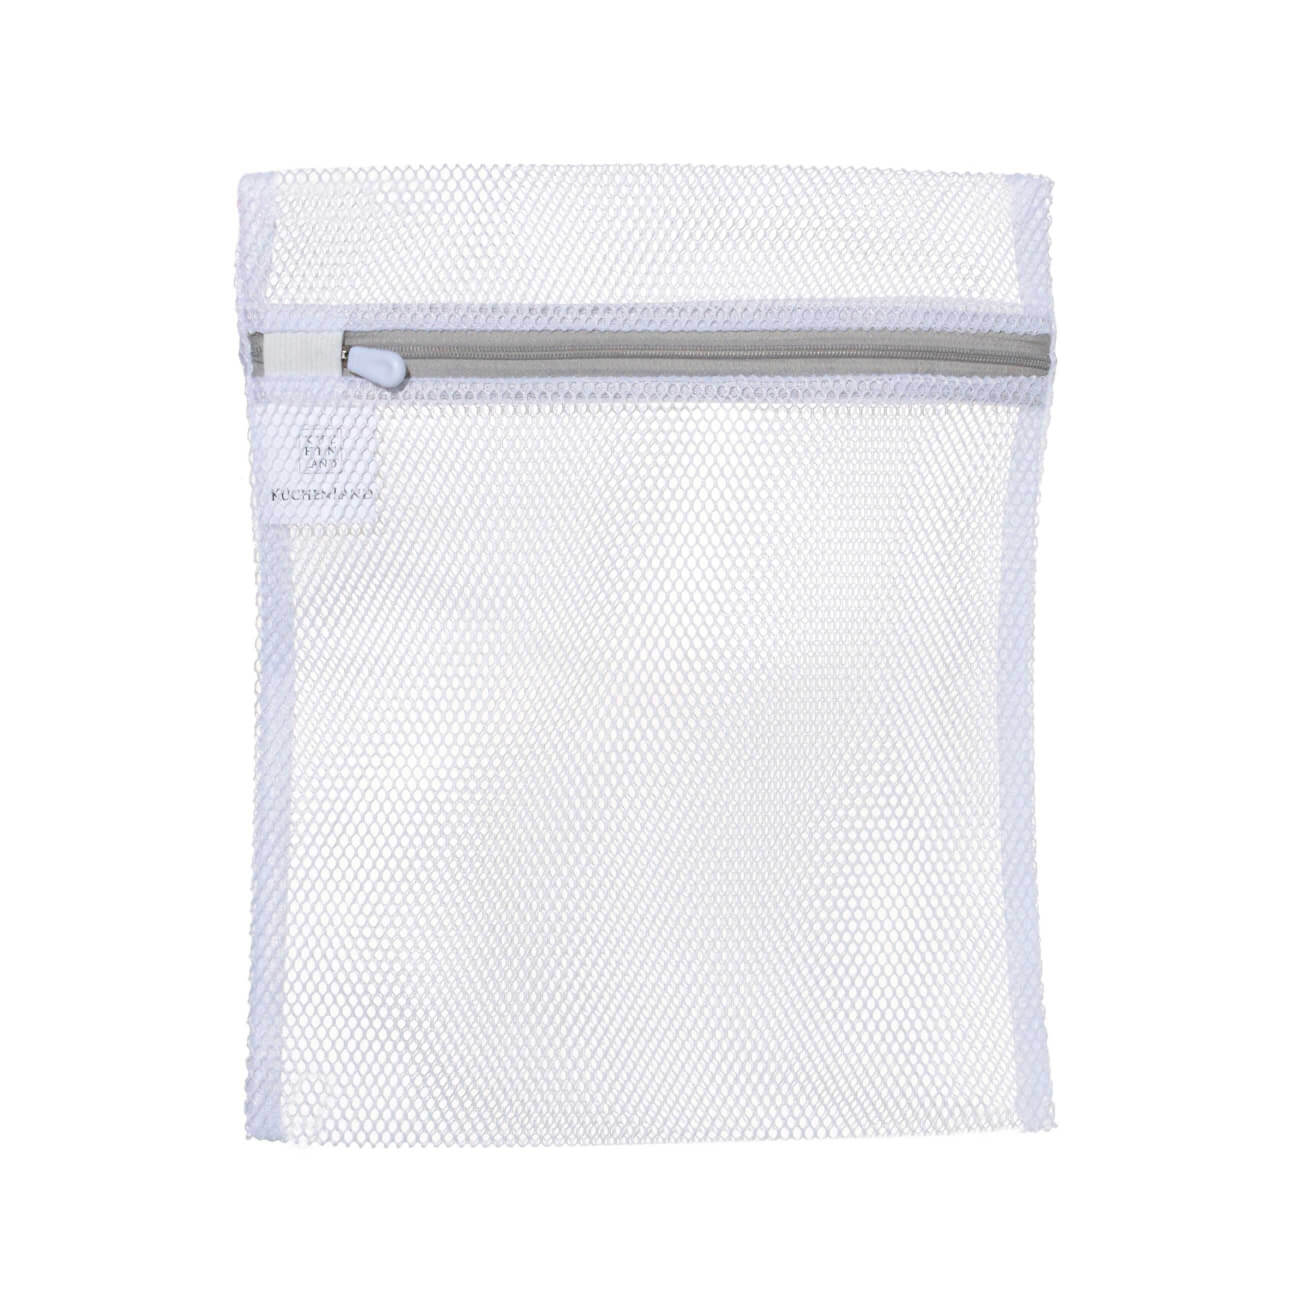 Мешок для стирки нижнего белья, 25х30 см, полиэстер, бело-серый, Safety изображение № 1